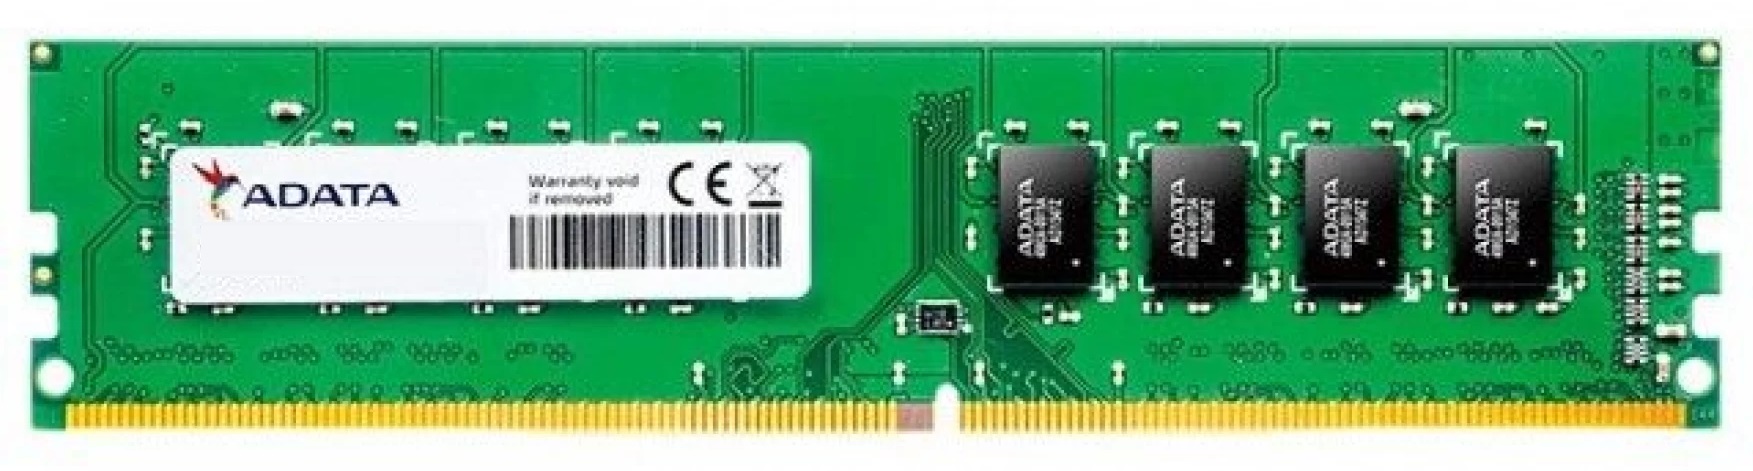 Memoria RAM 16GB para PC de Escritorio / Adata | 2312 - Modulo de Memoria RAM Adata de 16GB para PC de Escritorio. Garantía 3-Años